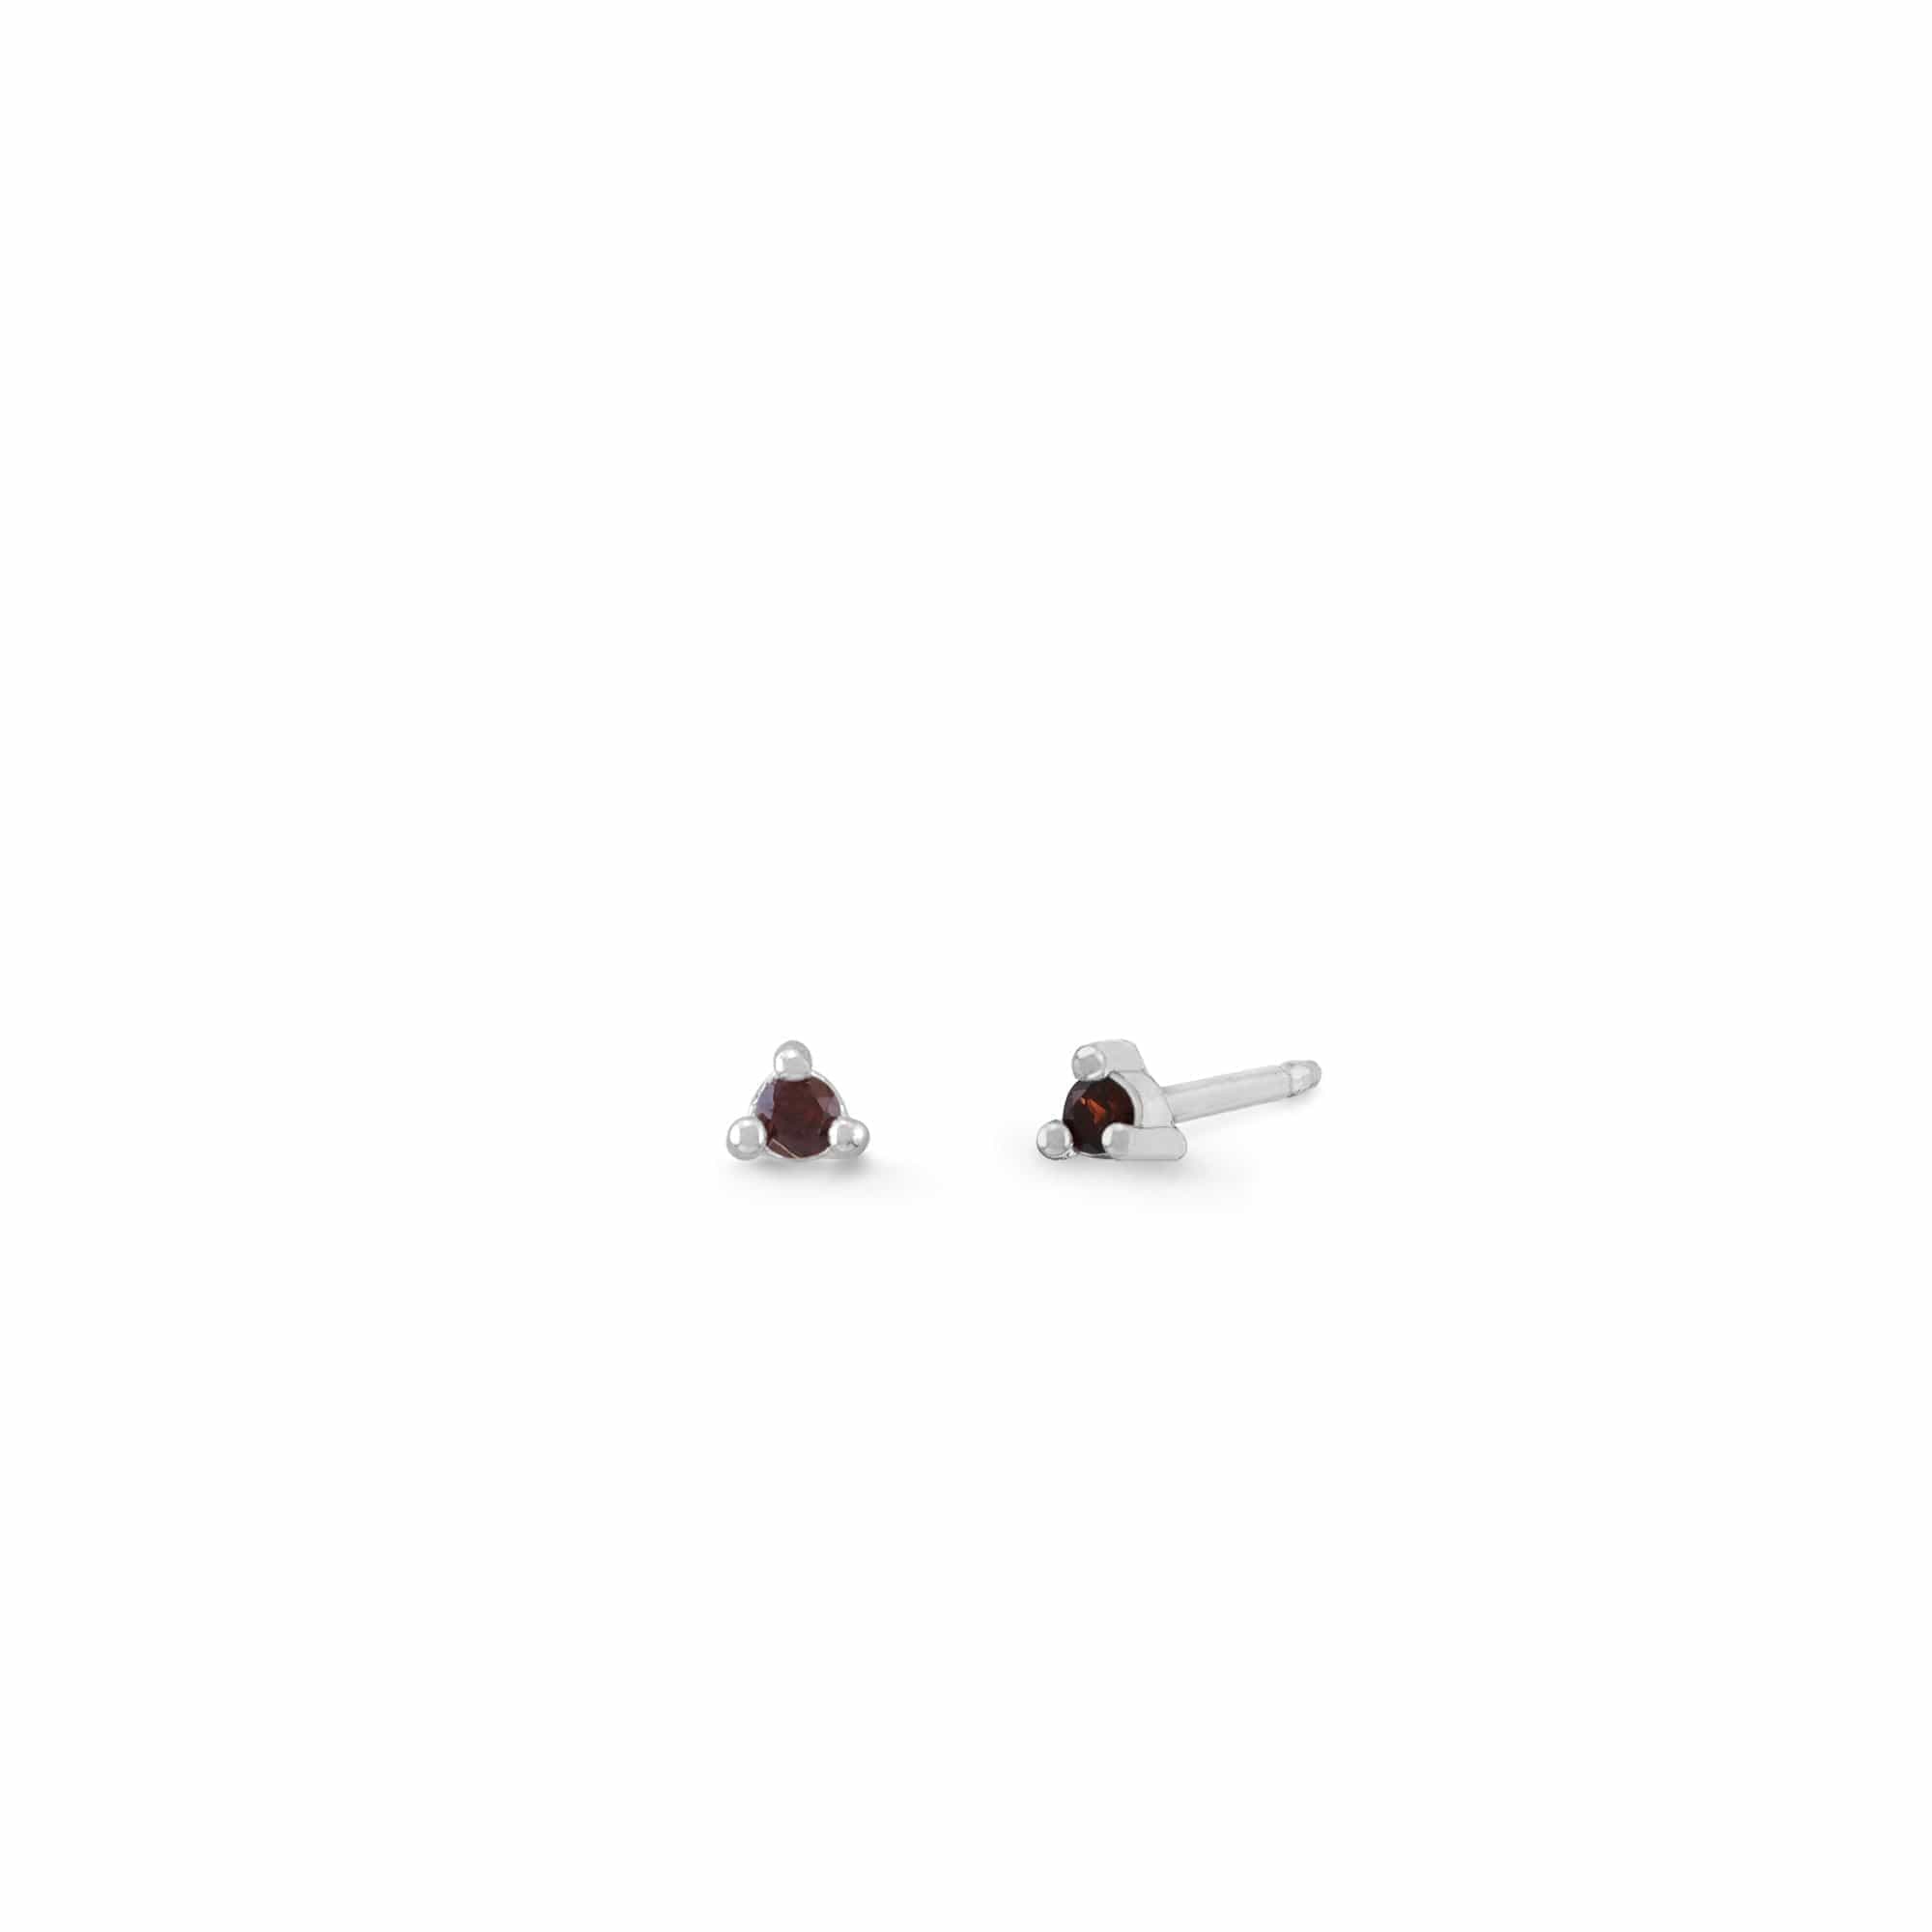 Boma Jewelry Earrings Garnet / Sterling Silver Mini Gemstone Studs